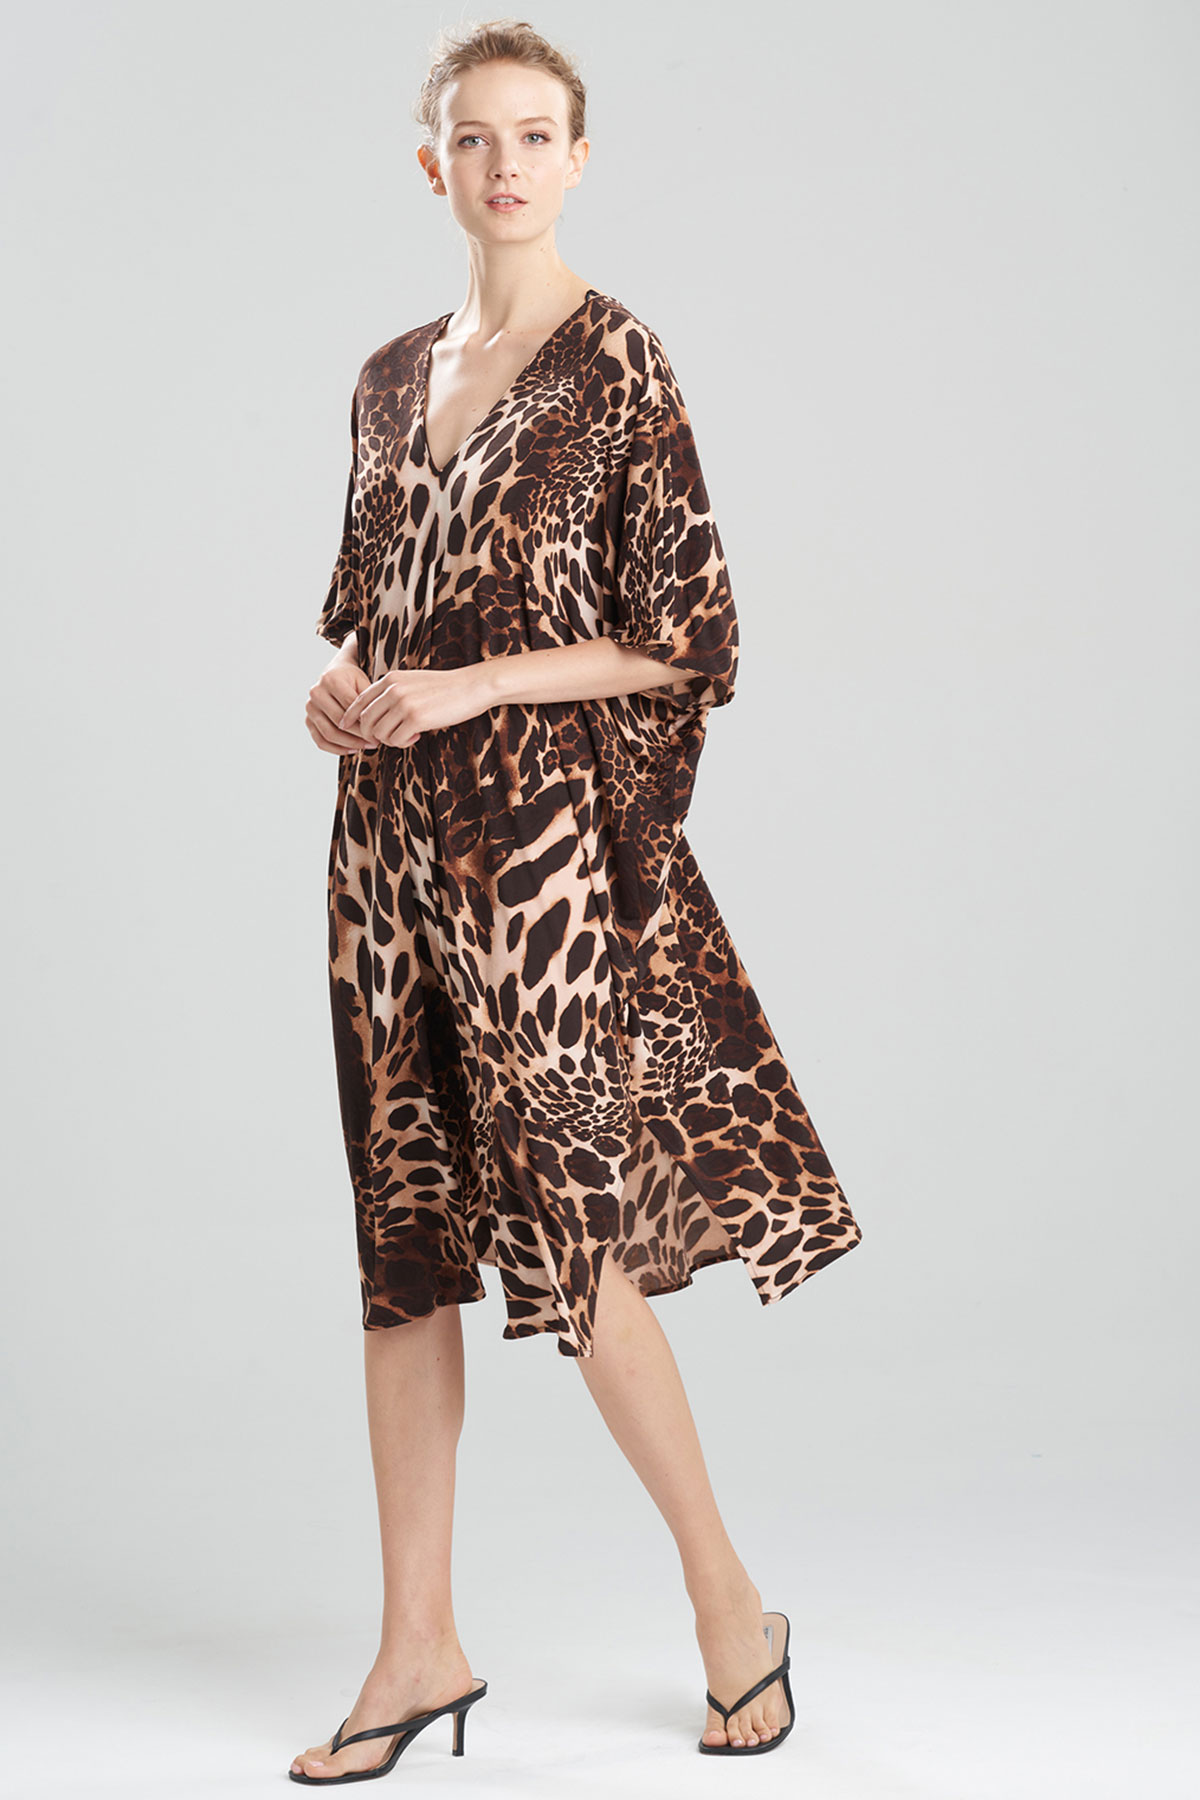 Buy Leopard Jersey Caftan and Honeymoon - Shop Natori Online